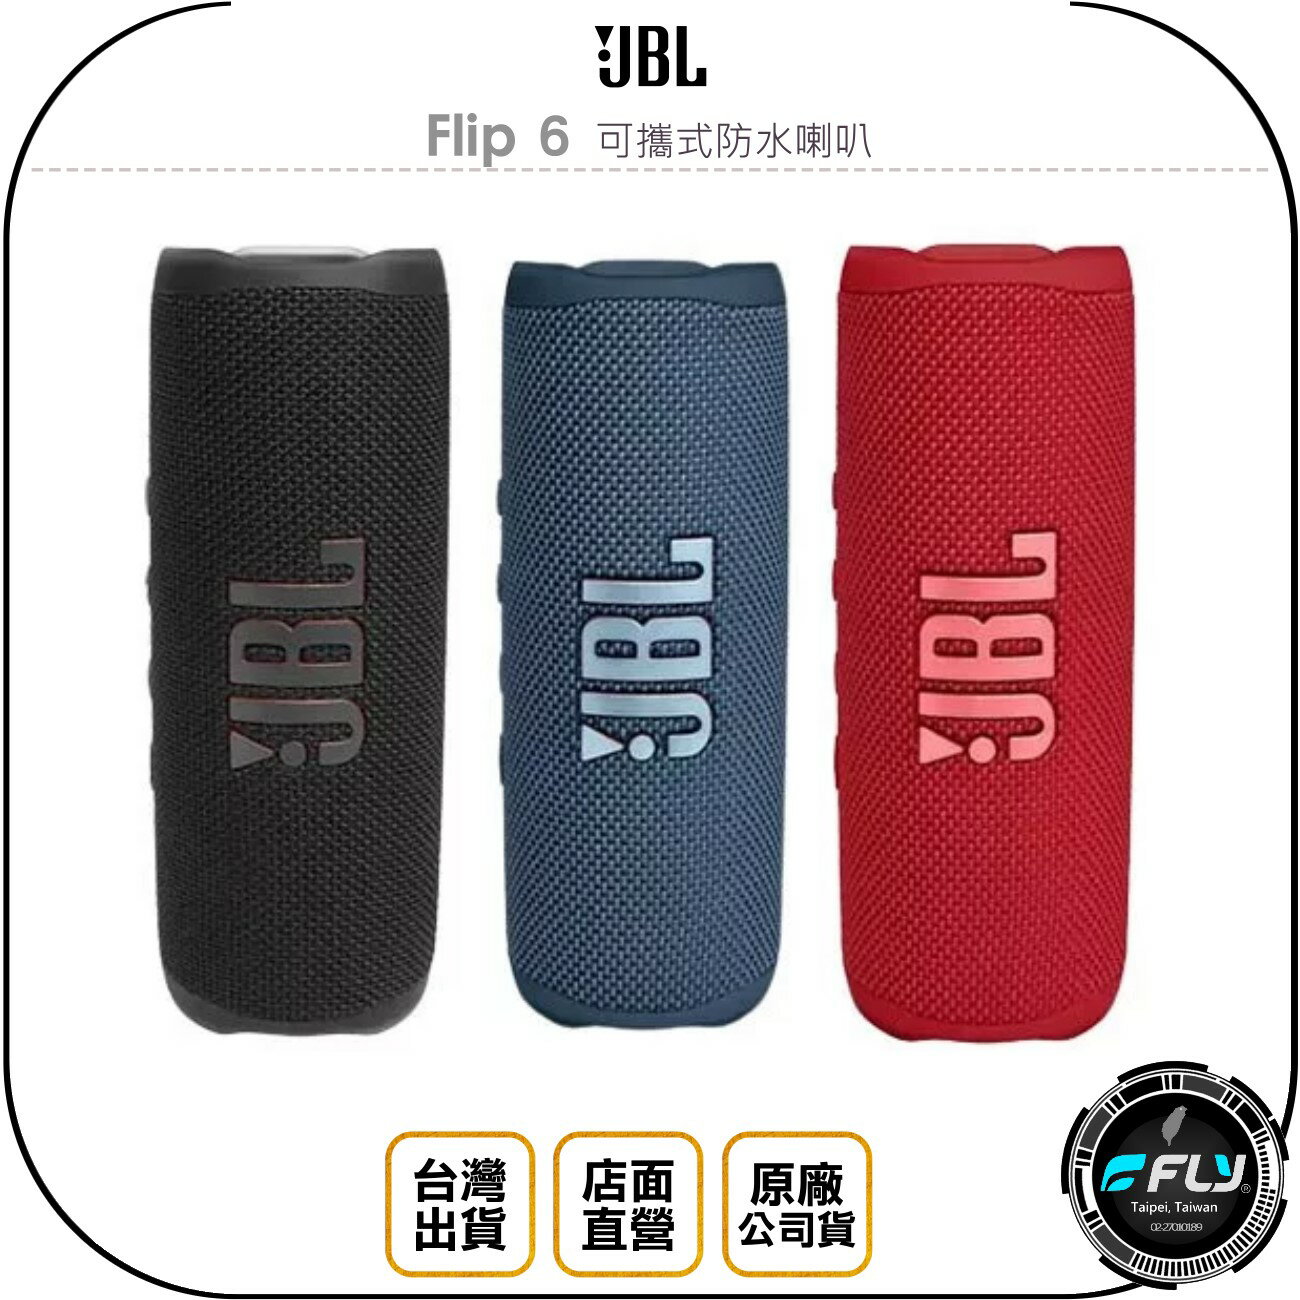 《飛翔無線3C》JBL Flip 6 可攜式防水喇叭◉公司貨◉藍芽音響◉IP67防水防塵◉震撼音效◉USB充電